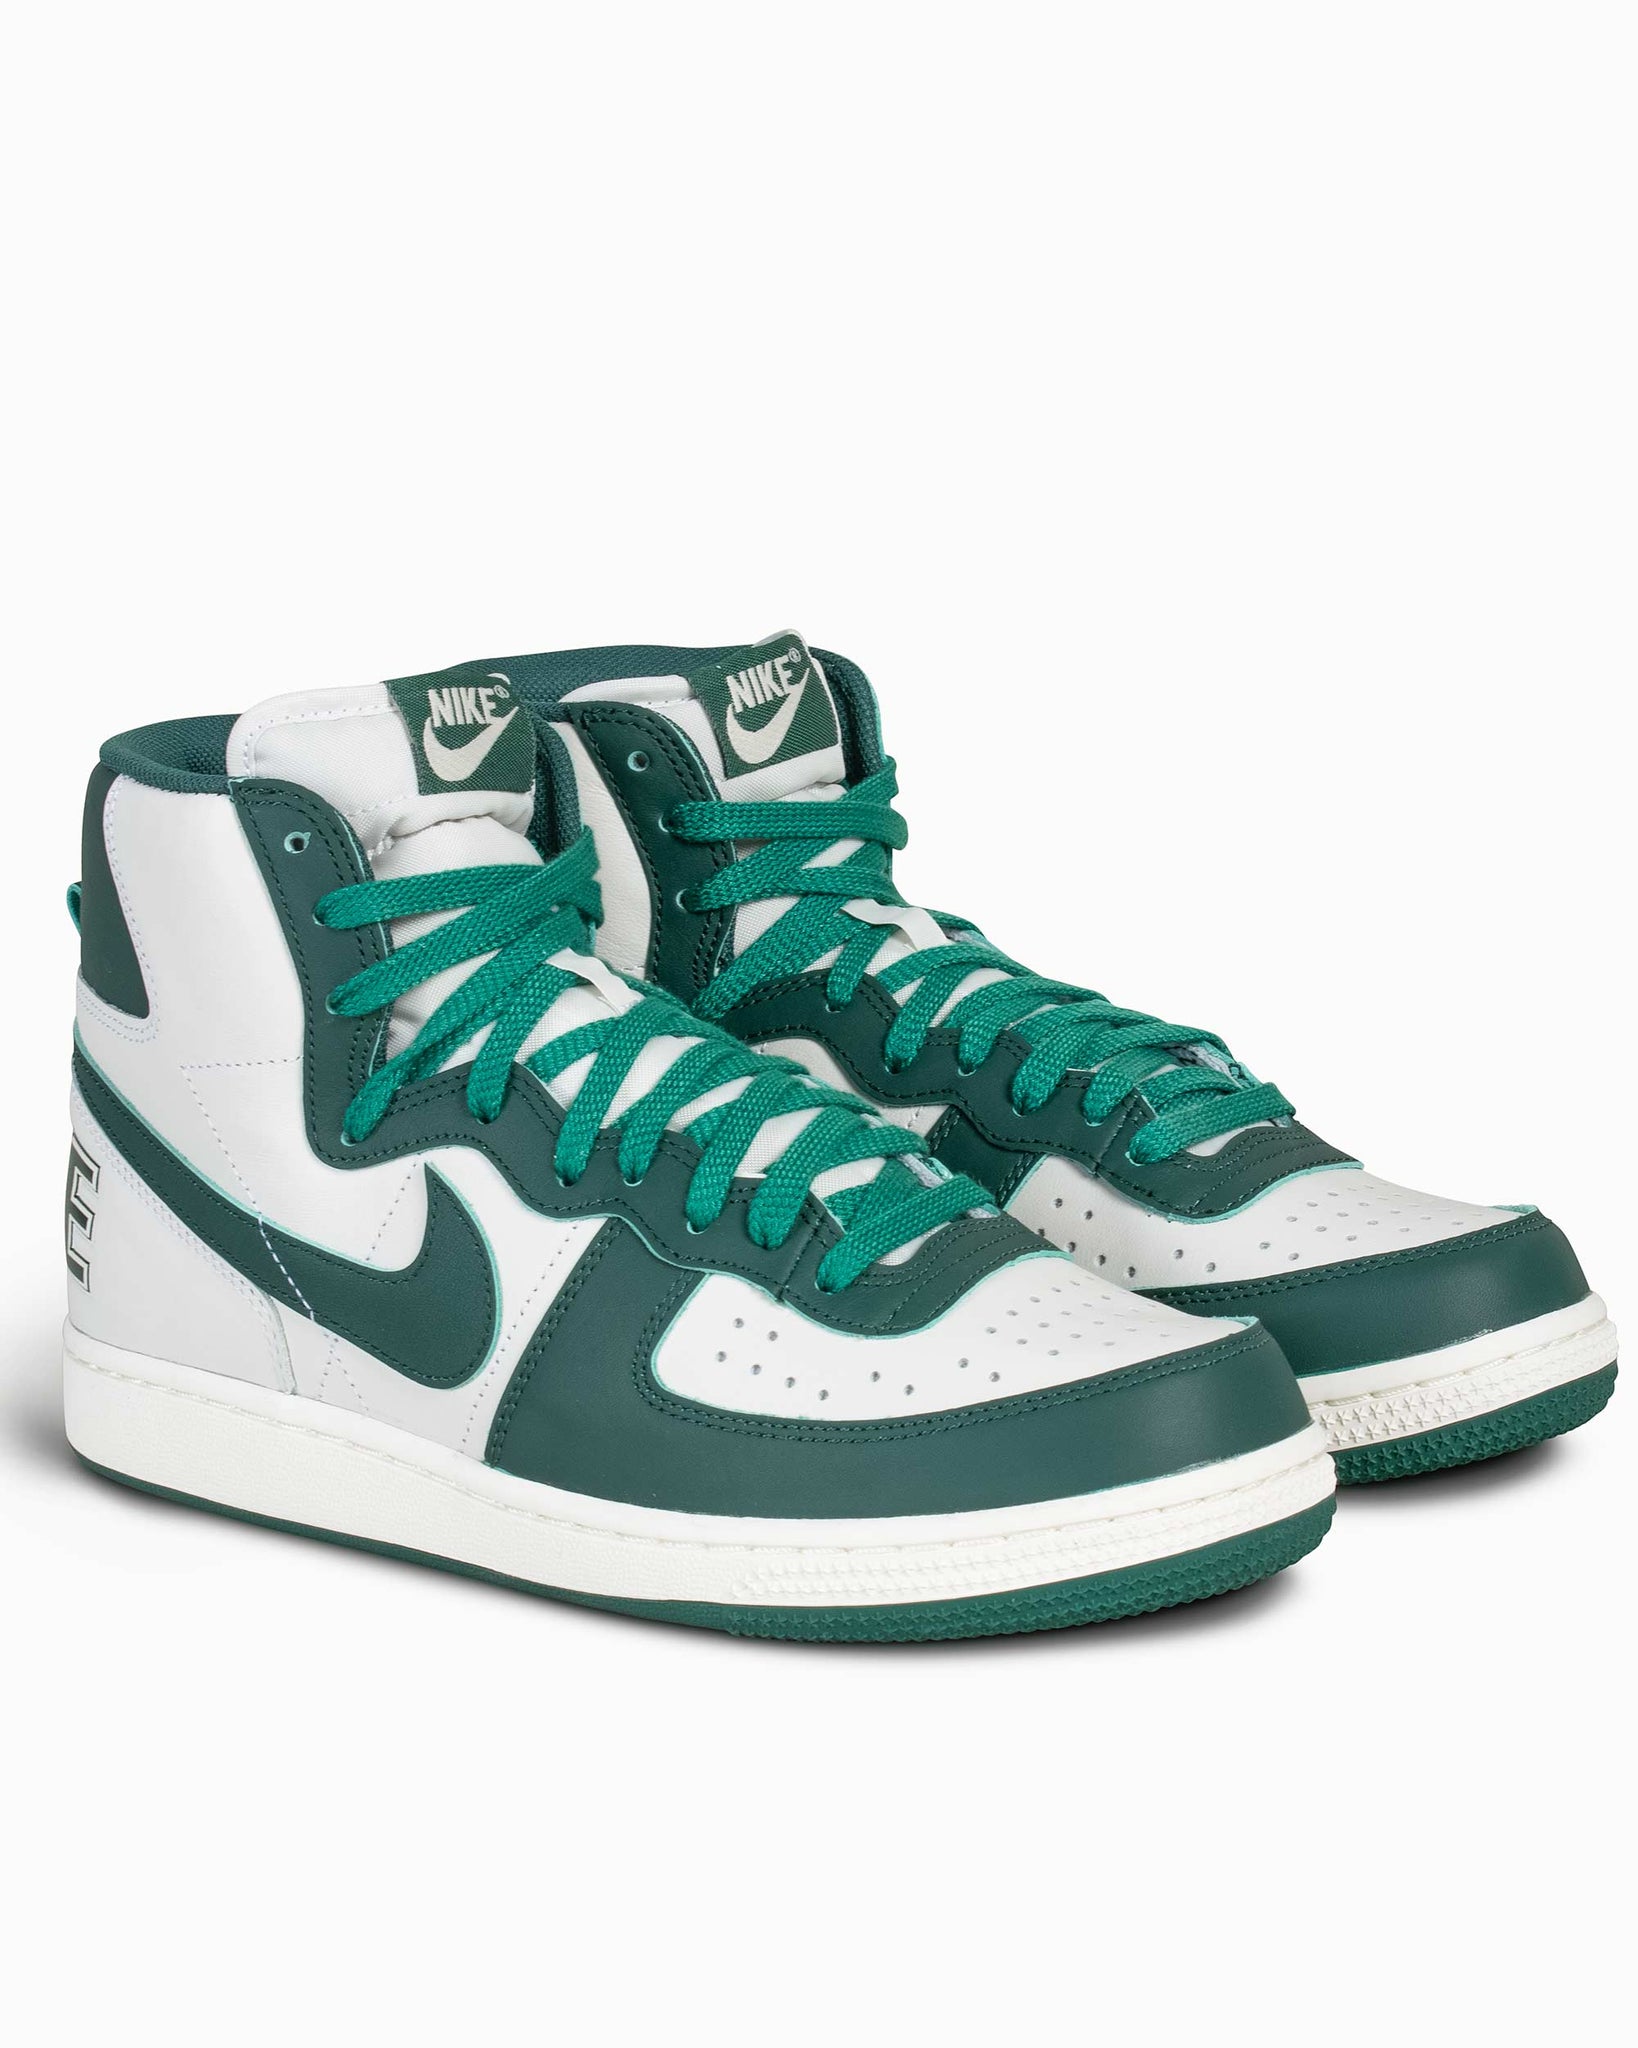 Nike Terminator High “Swan/Noble Green”